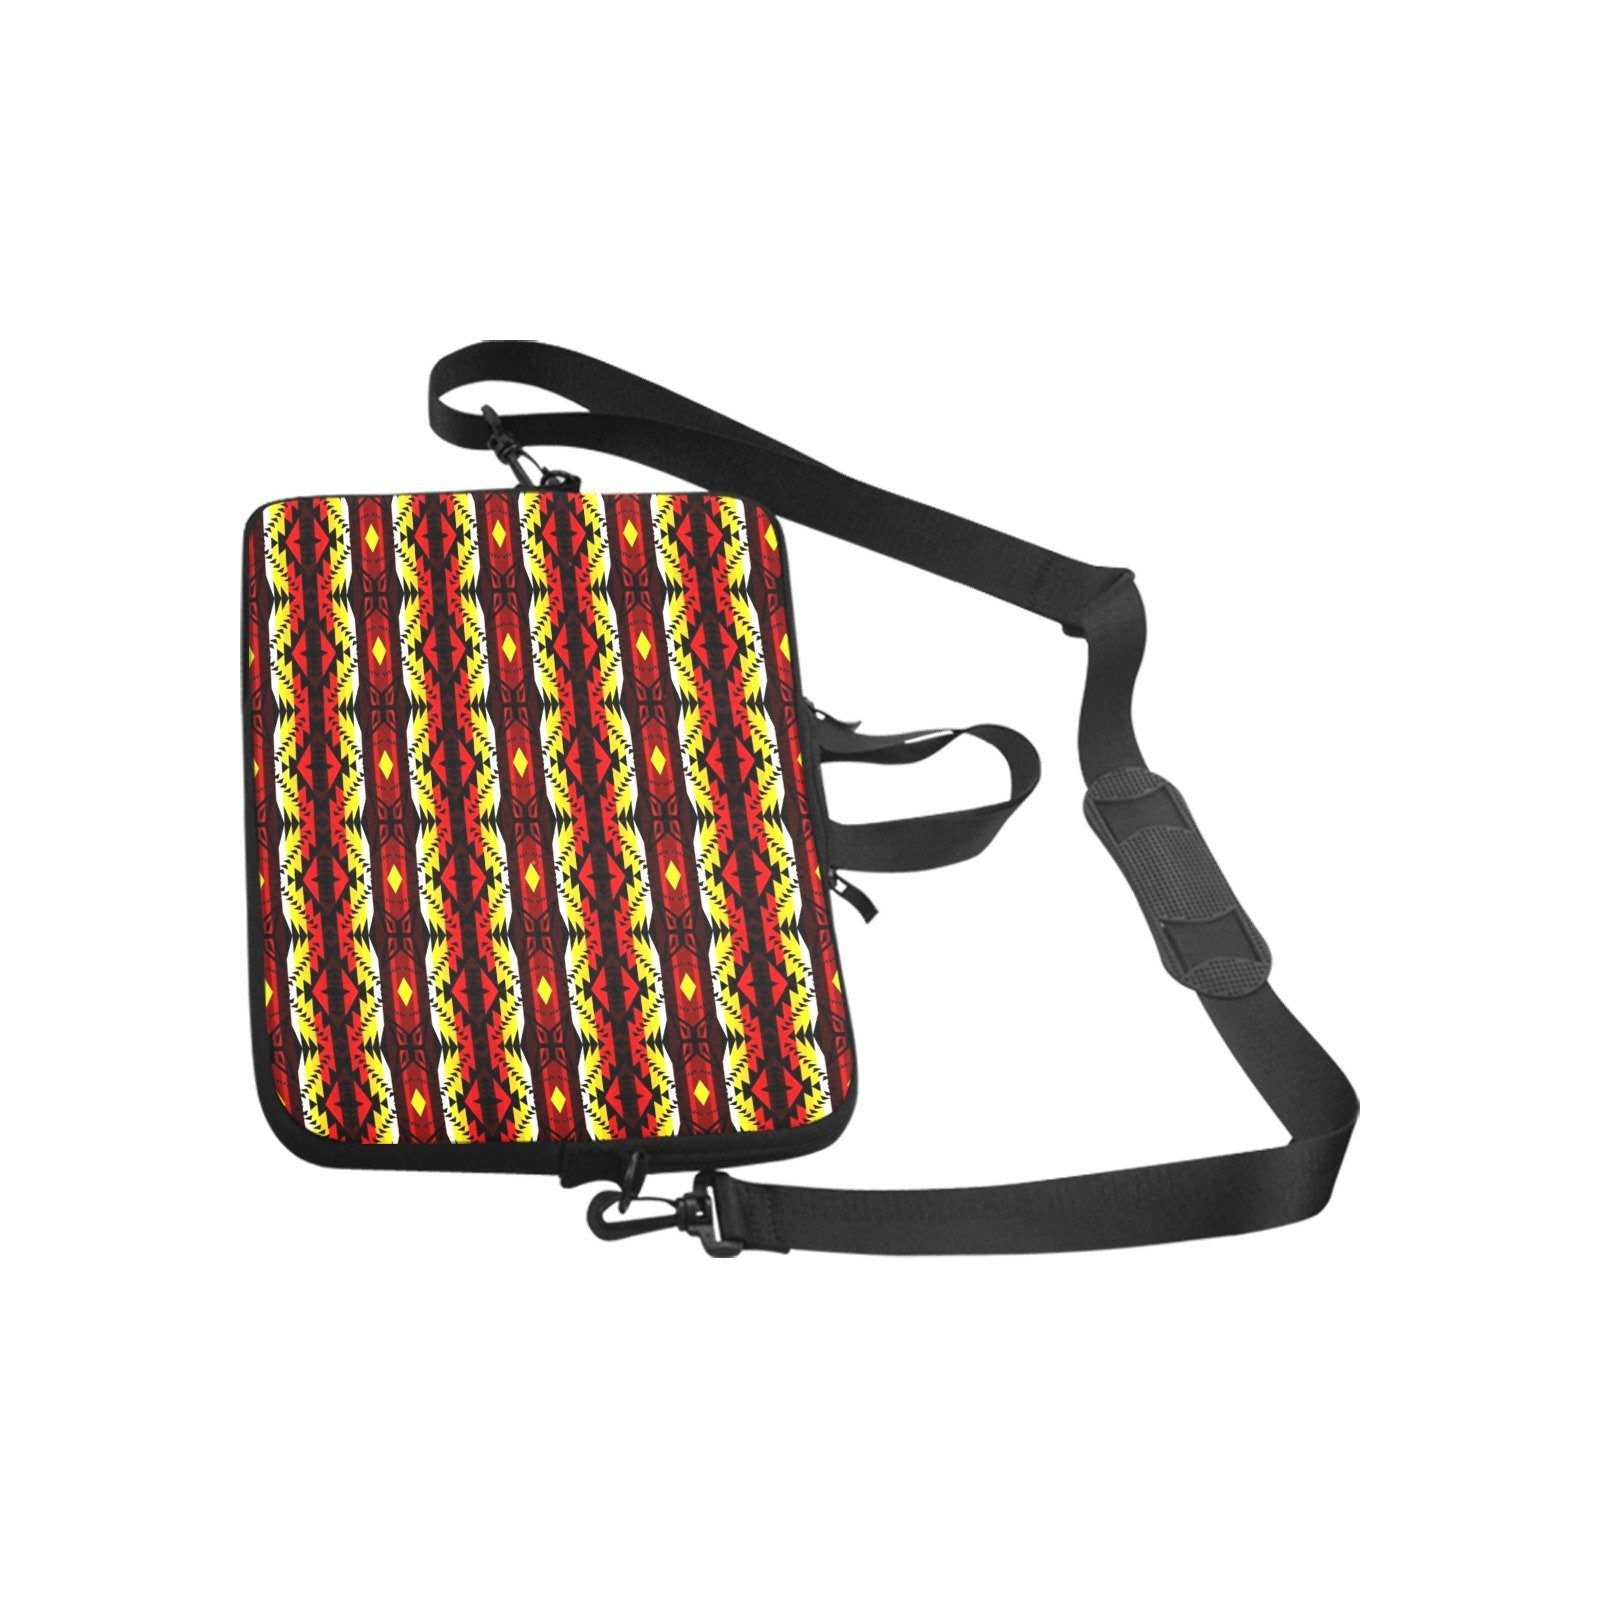 Canyon War Party Laptop Handbags 14" bag e-joyer 